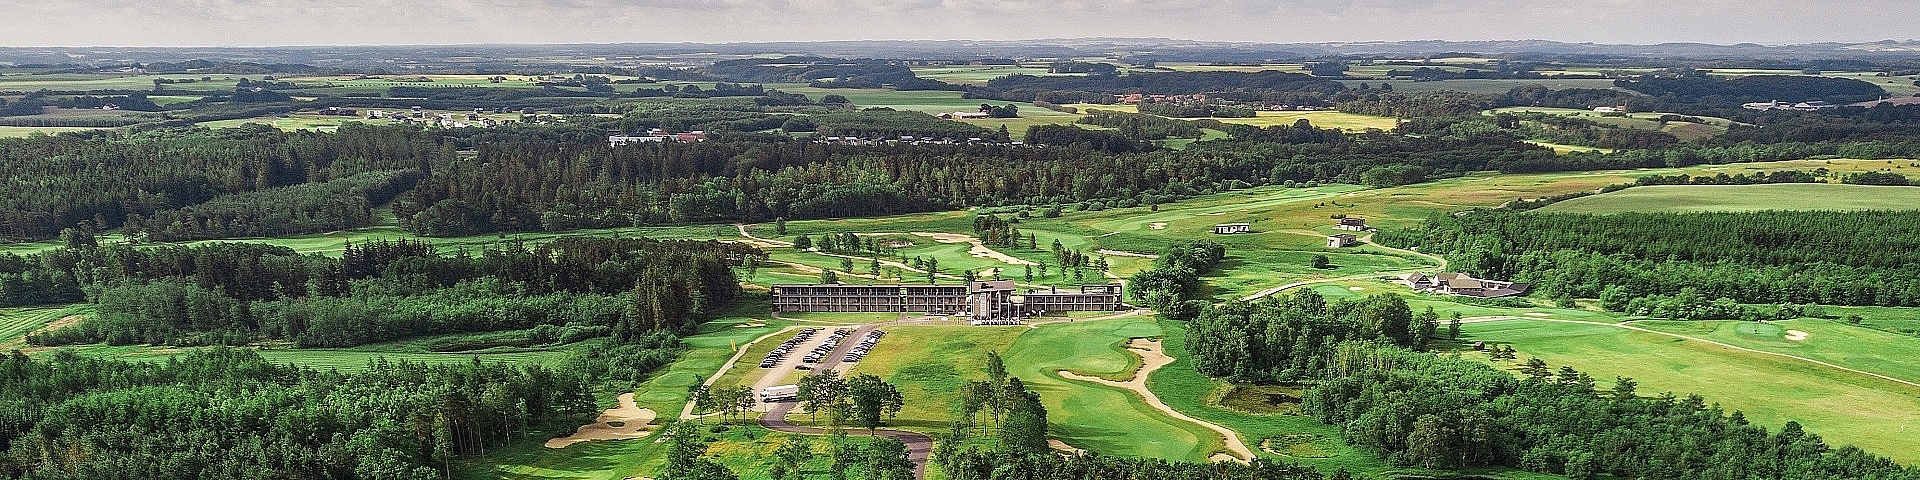 Lübker Golf Course kan nu spilles på Trackman golfsimulatorer i hele verden